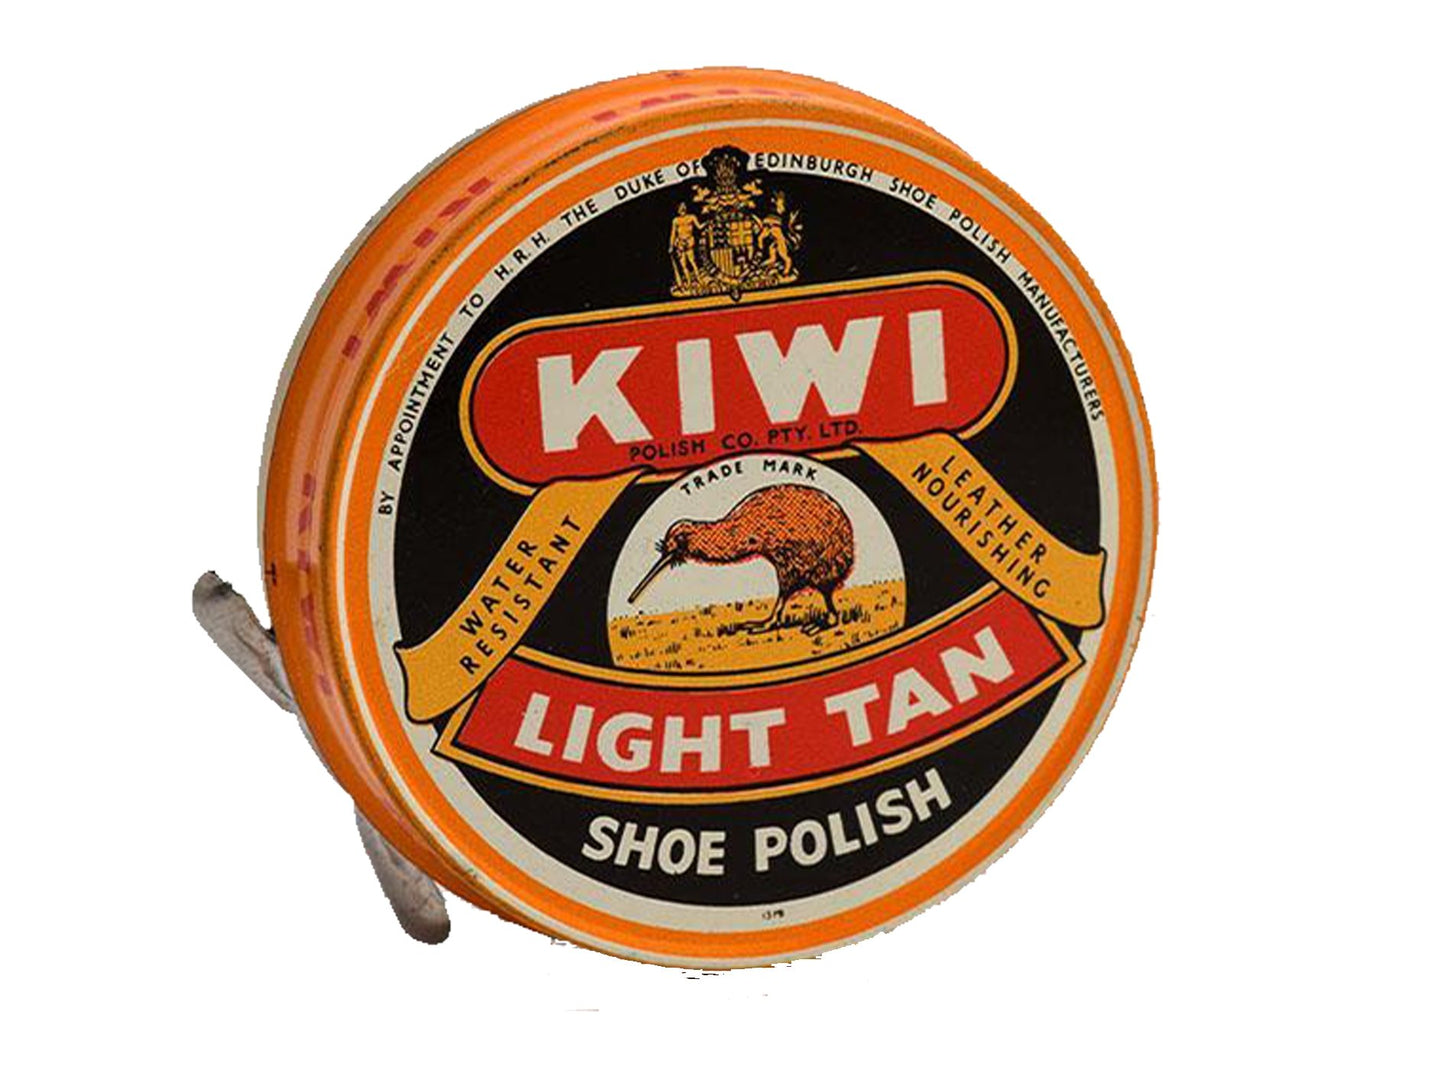 KIWI Light Tan Shoe Polish 12 Per Box - VIR Wholesale